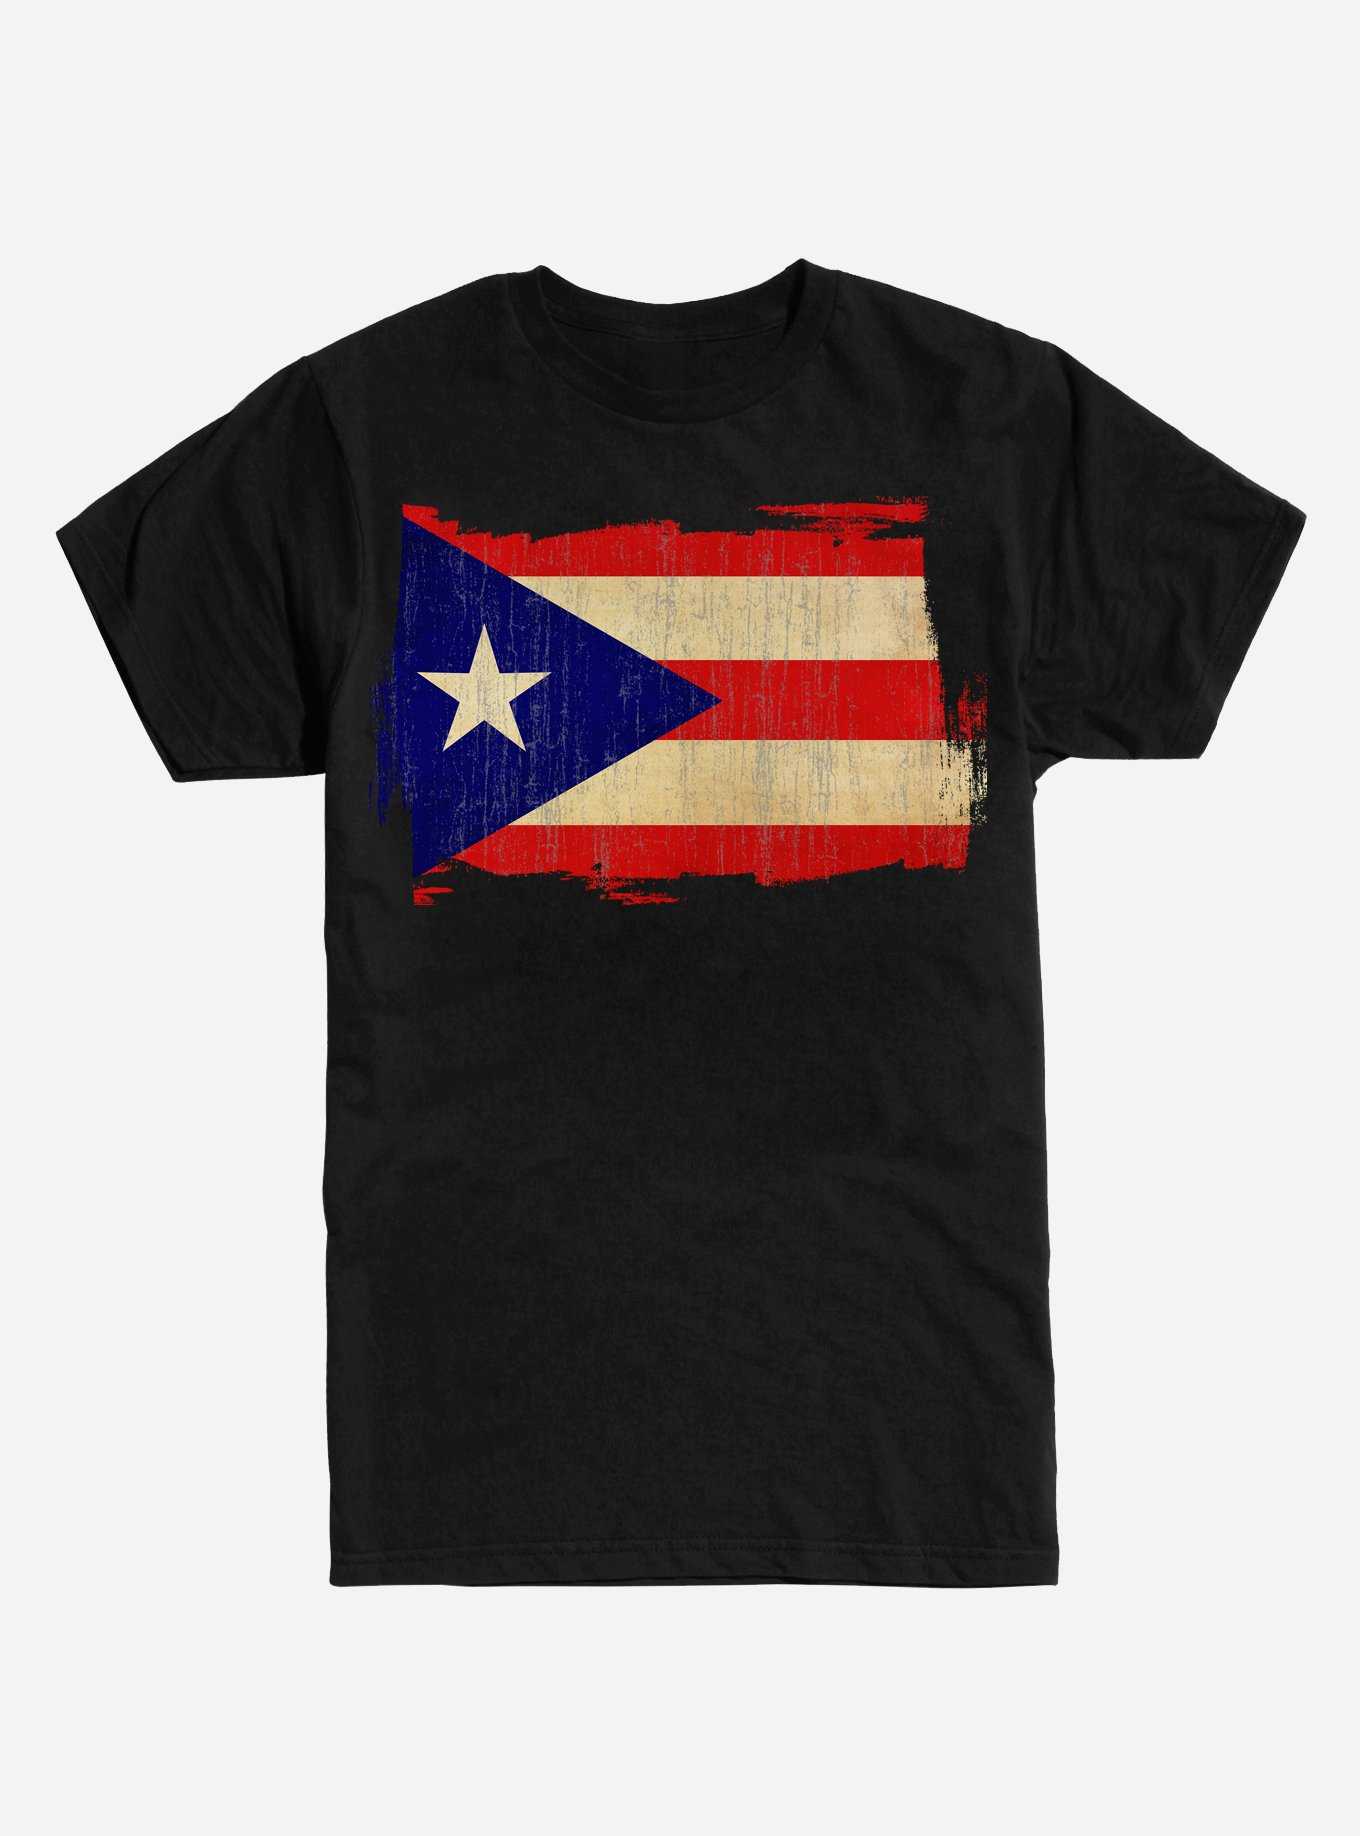 Flag of Puerto Rico T-Shirt, , hi-res